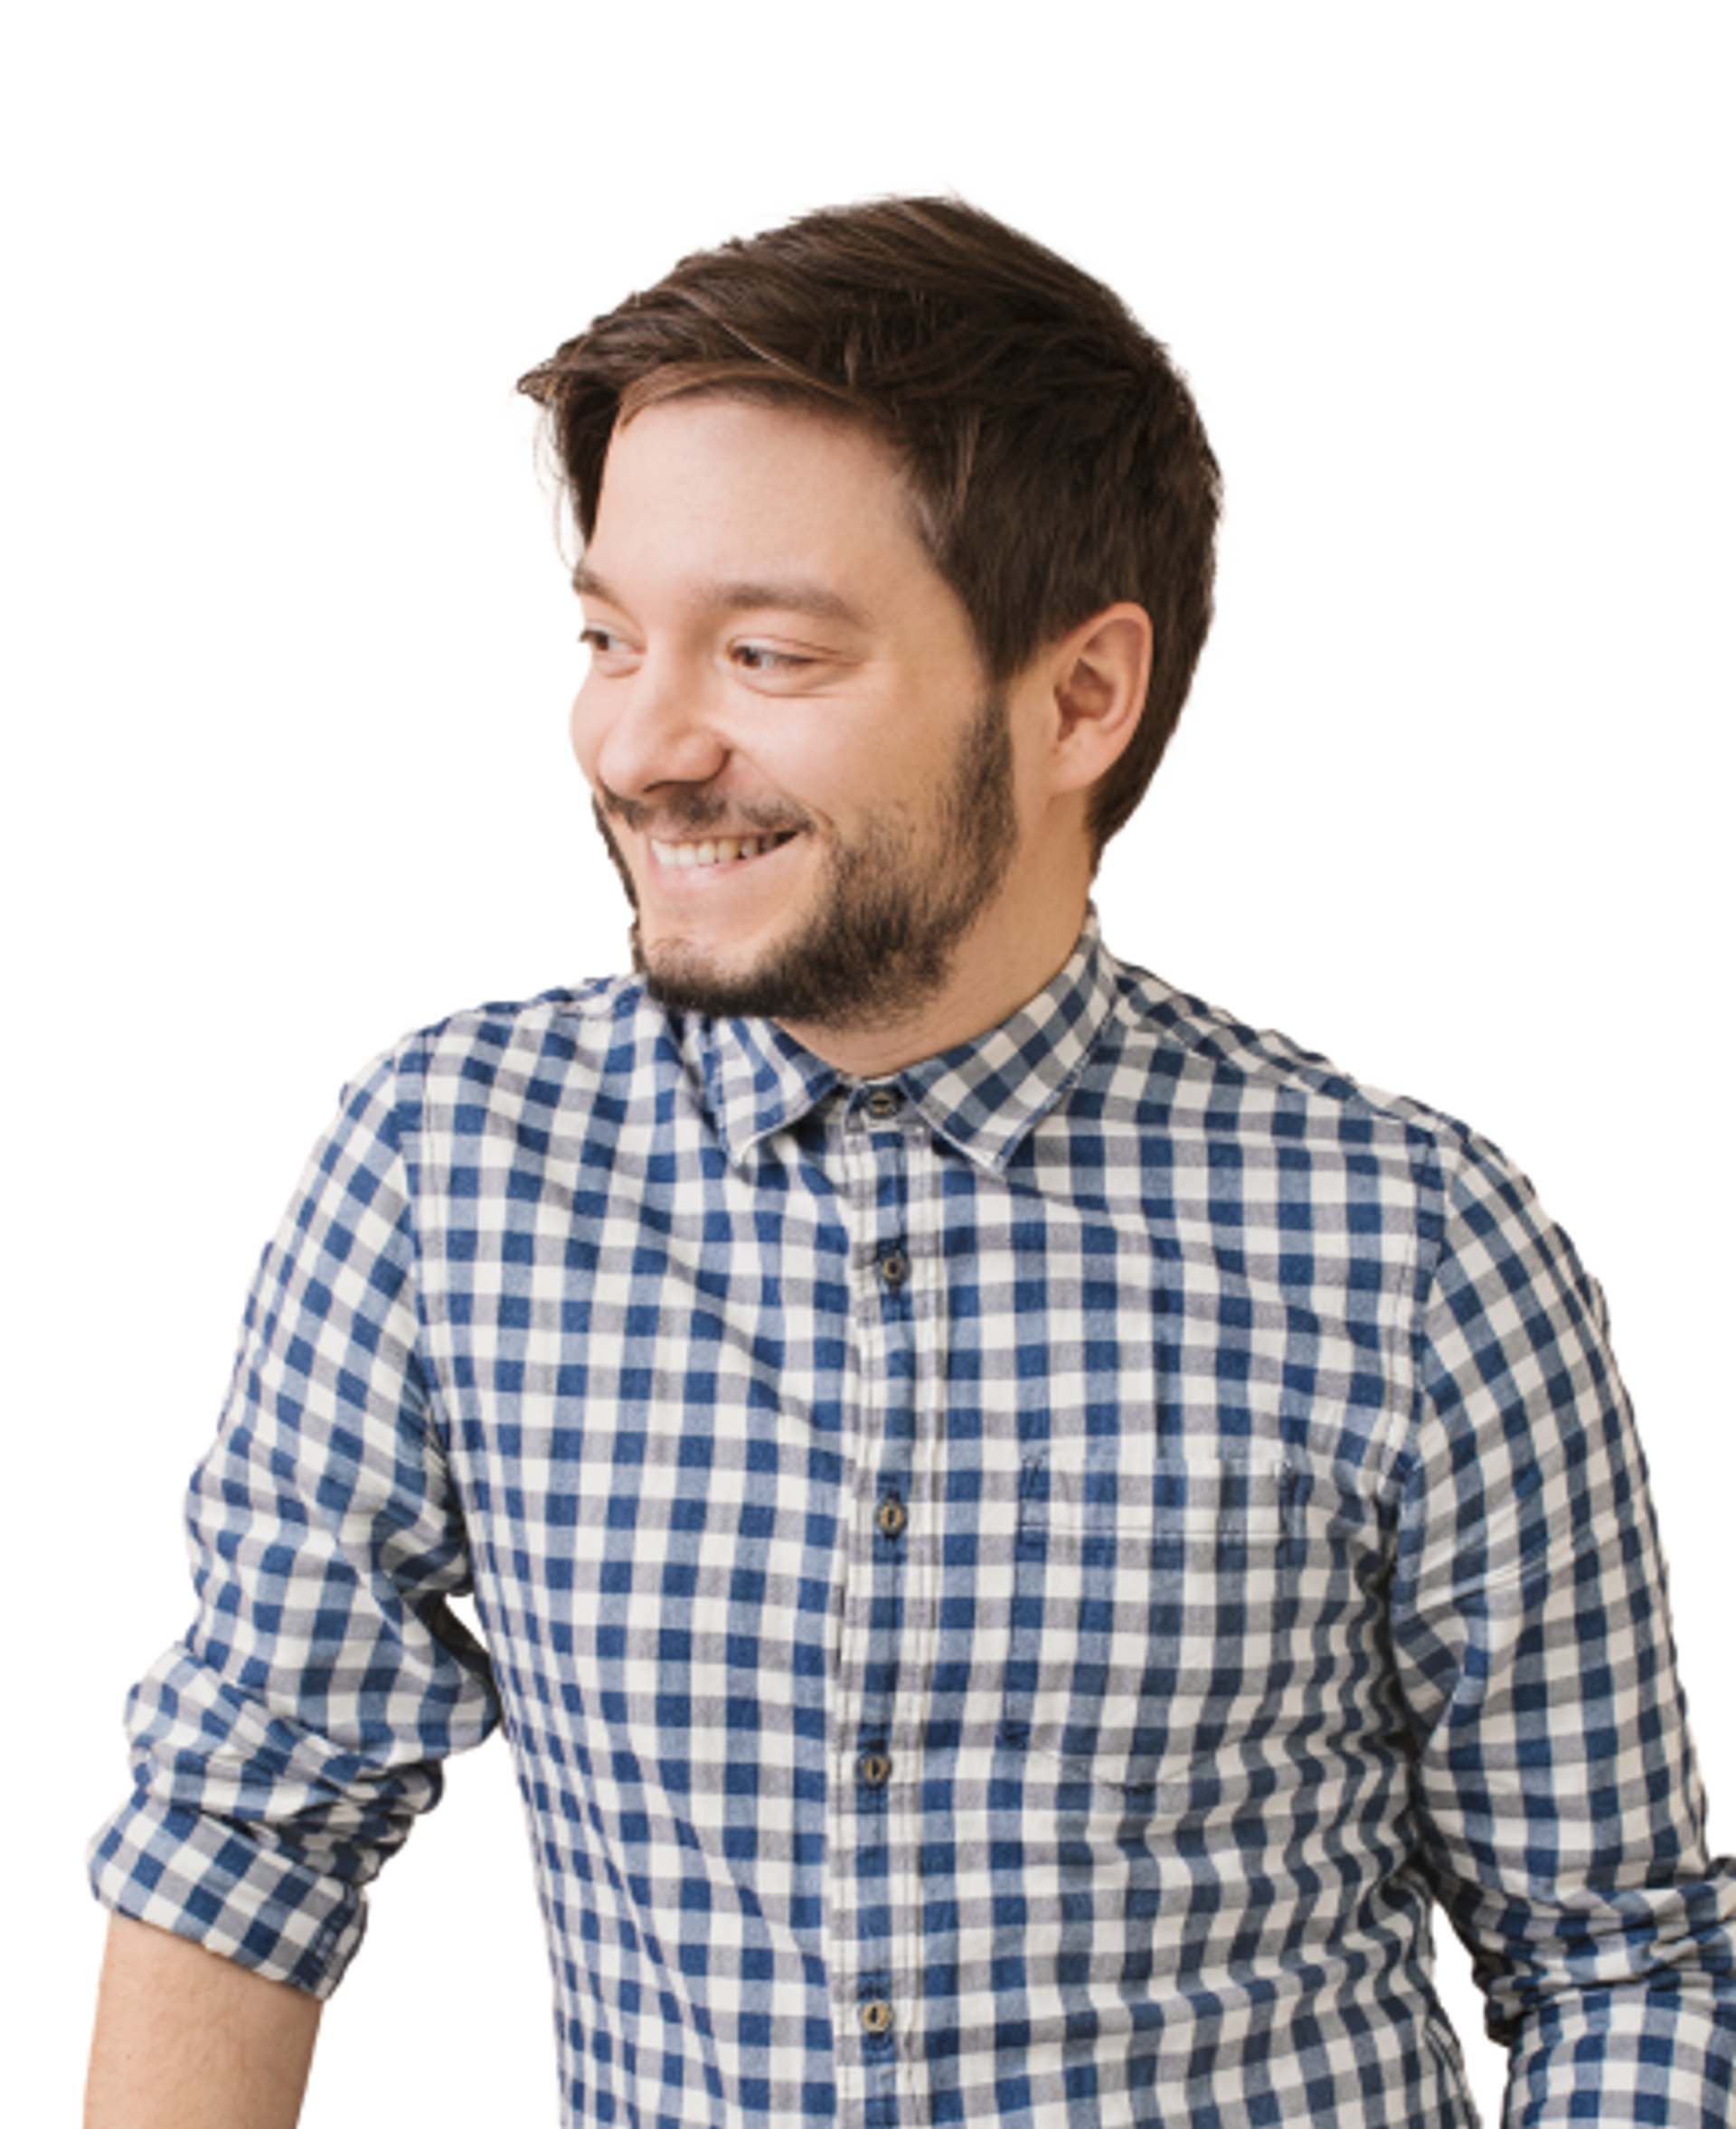 A startup employee wearing a blue checkered shirt